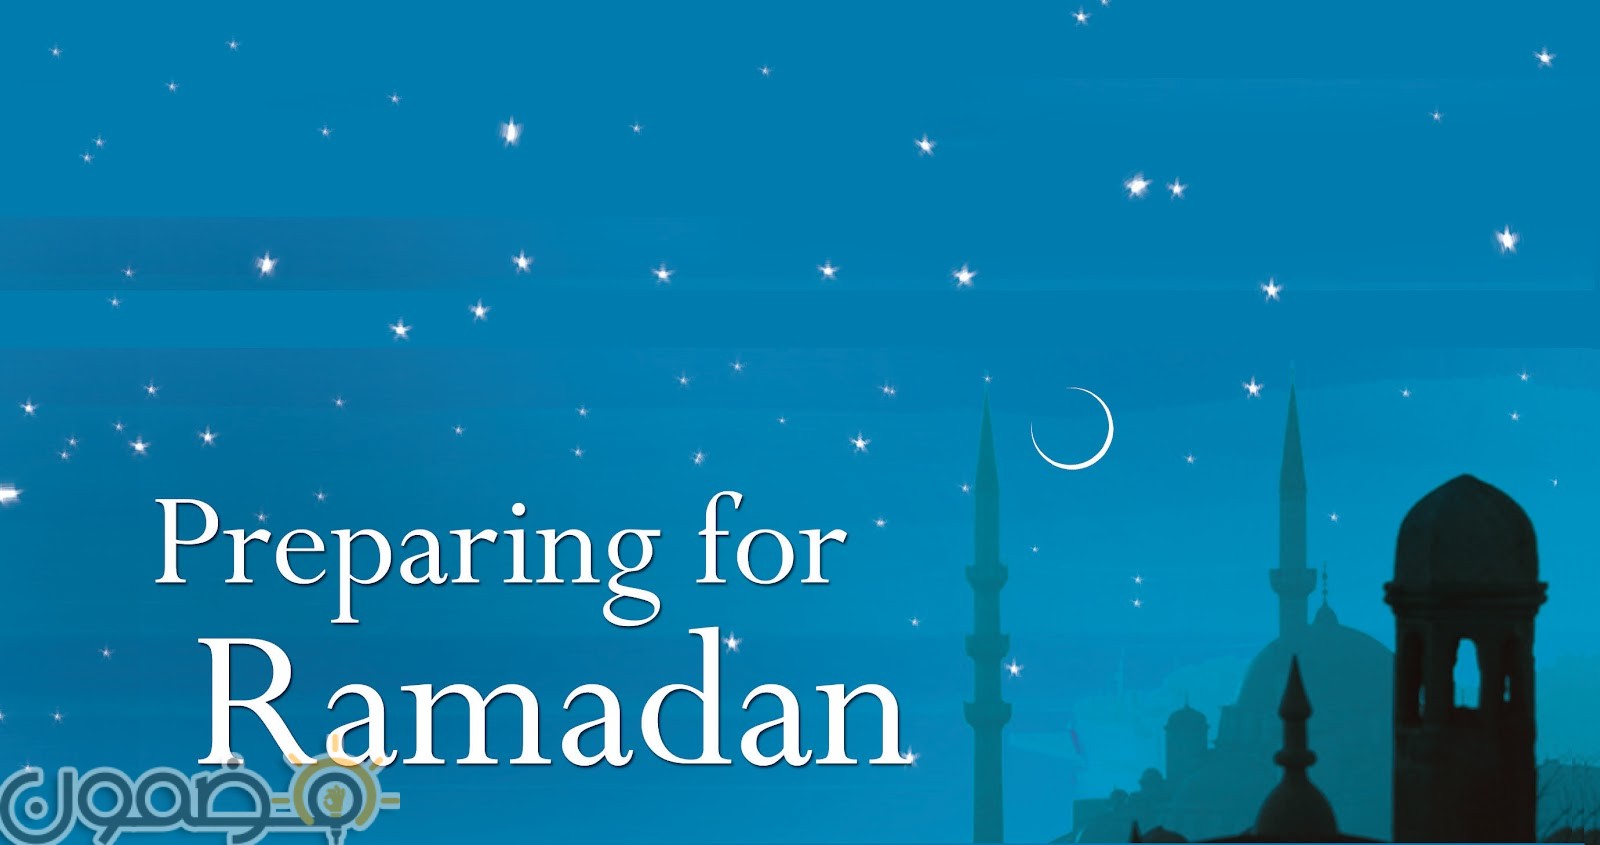 صور بوستات رمضانية 9 صور بوستات رمضانية جديدة رمضان كريم